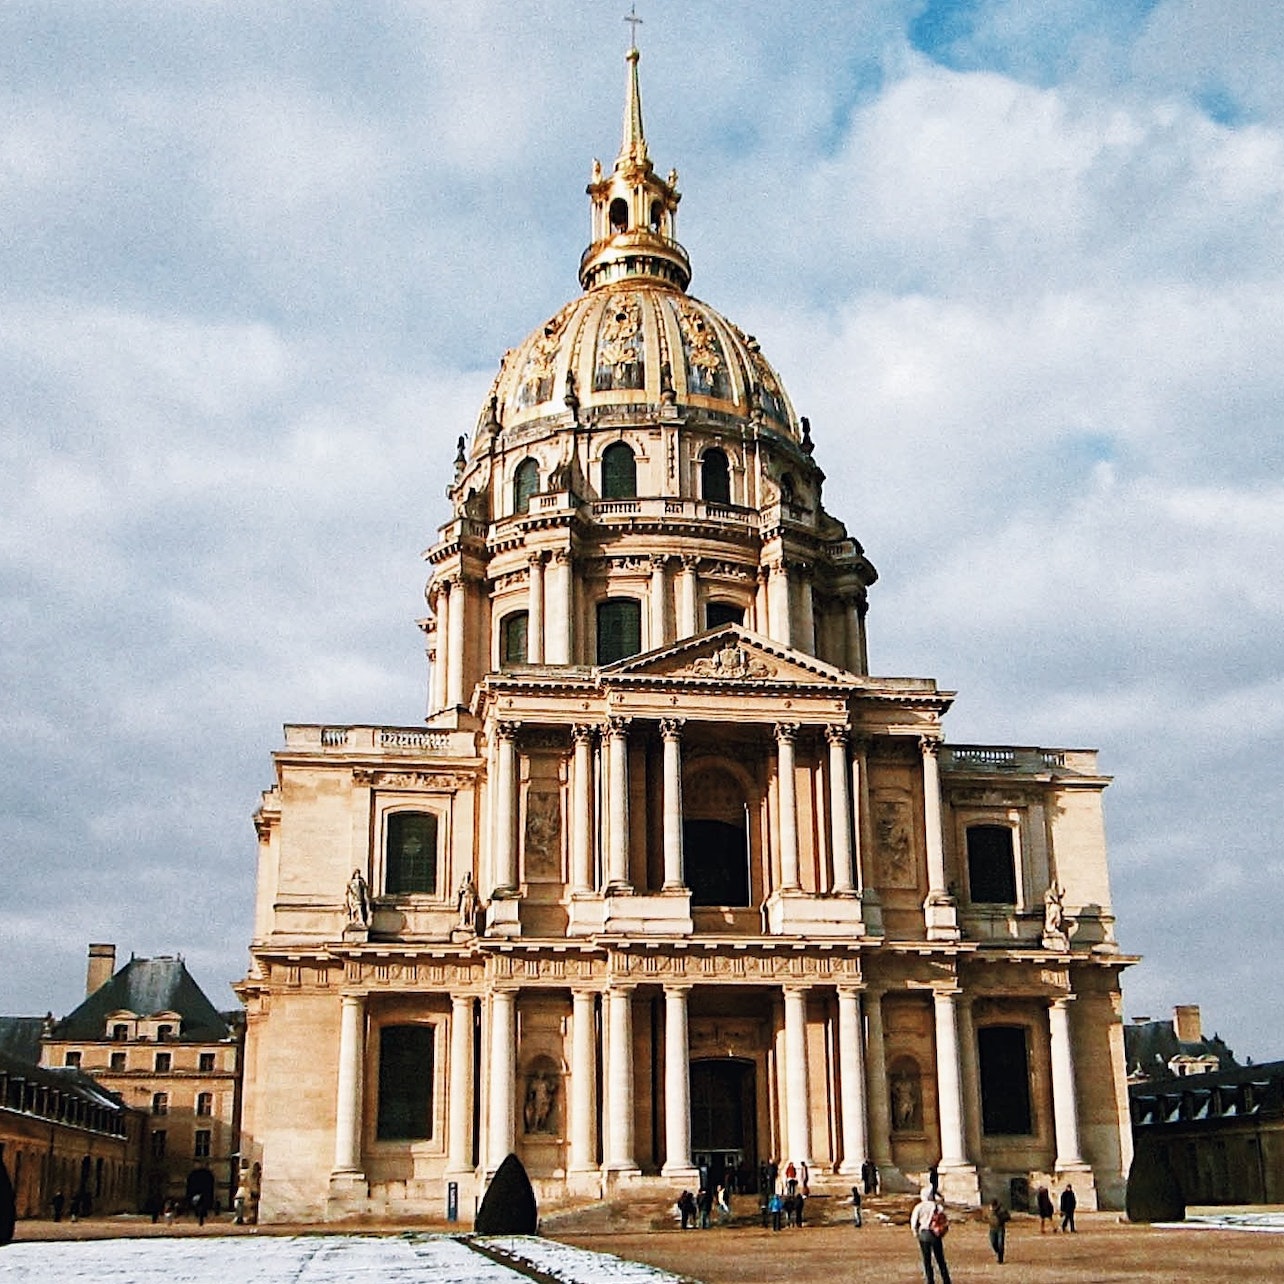 Picture of Musée de l’Armée in Paris, France